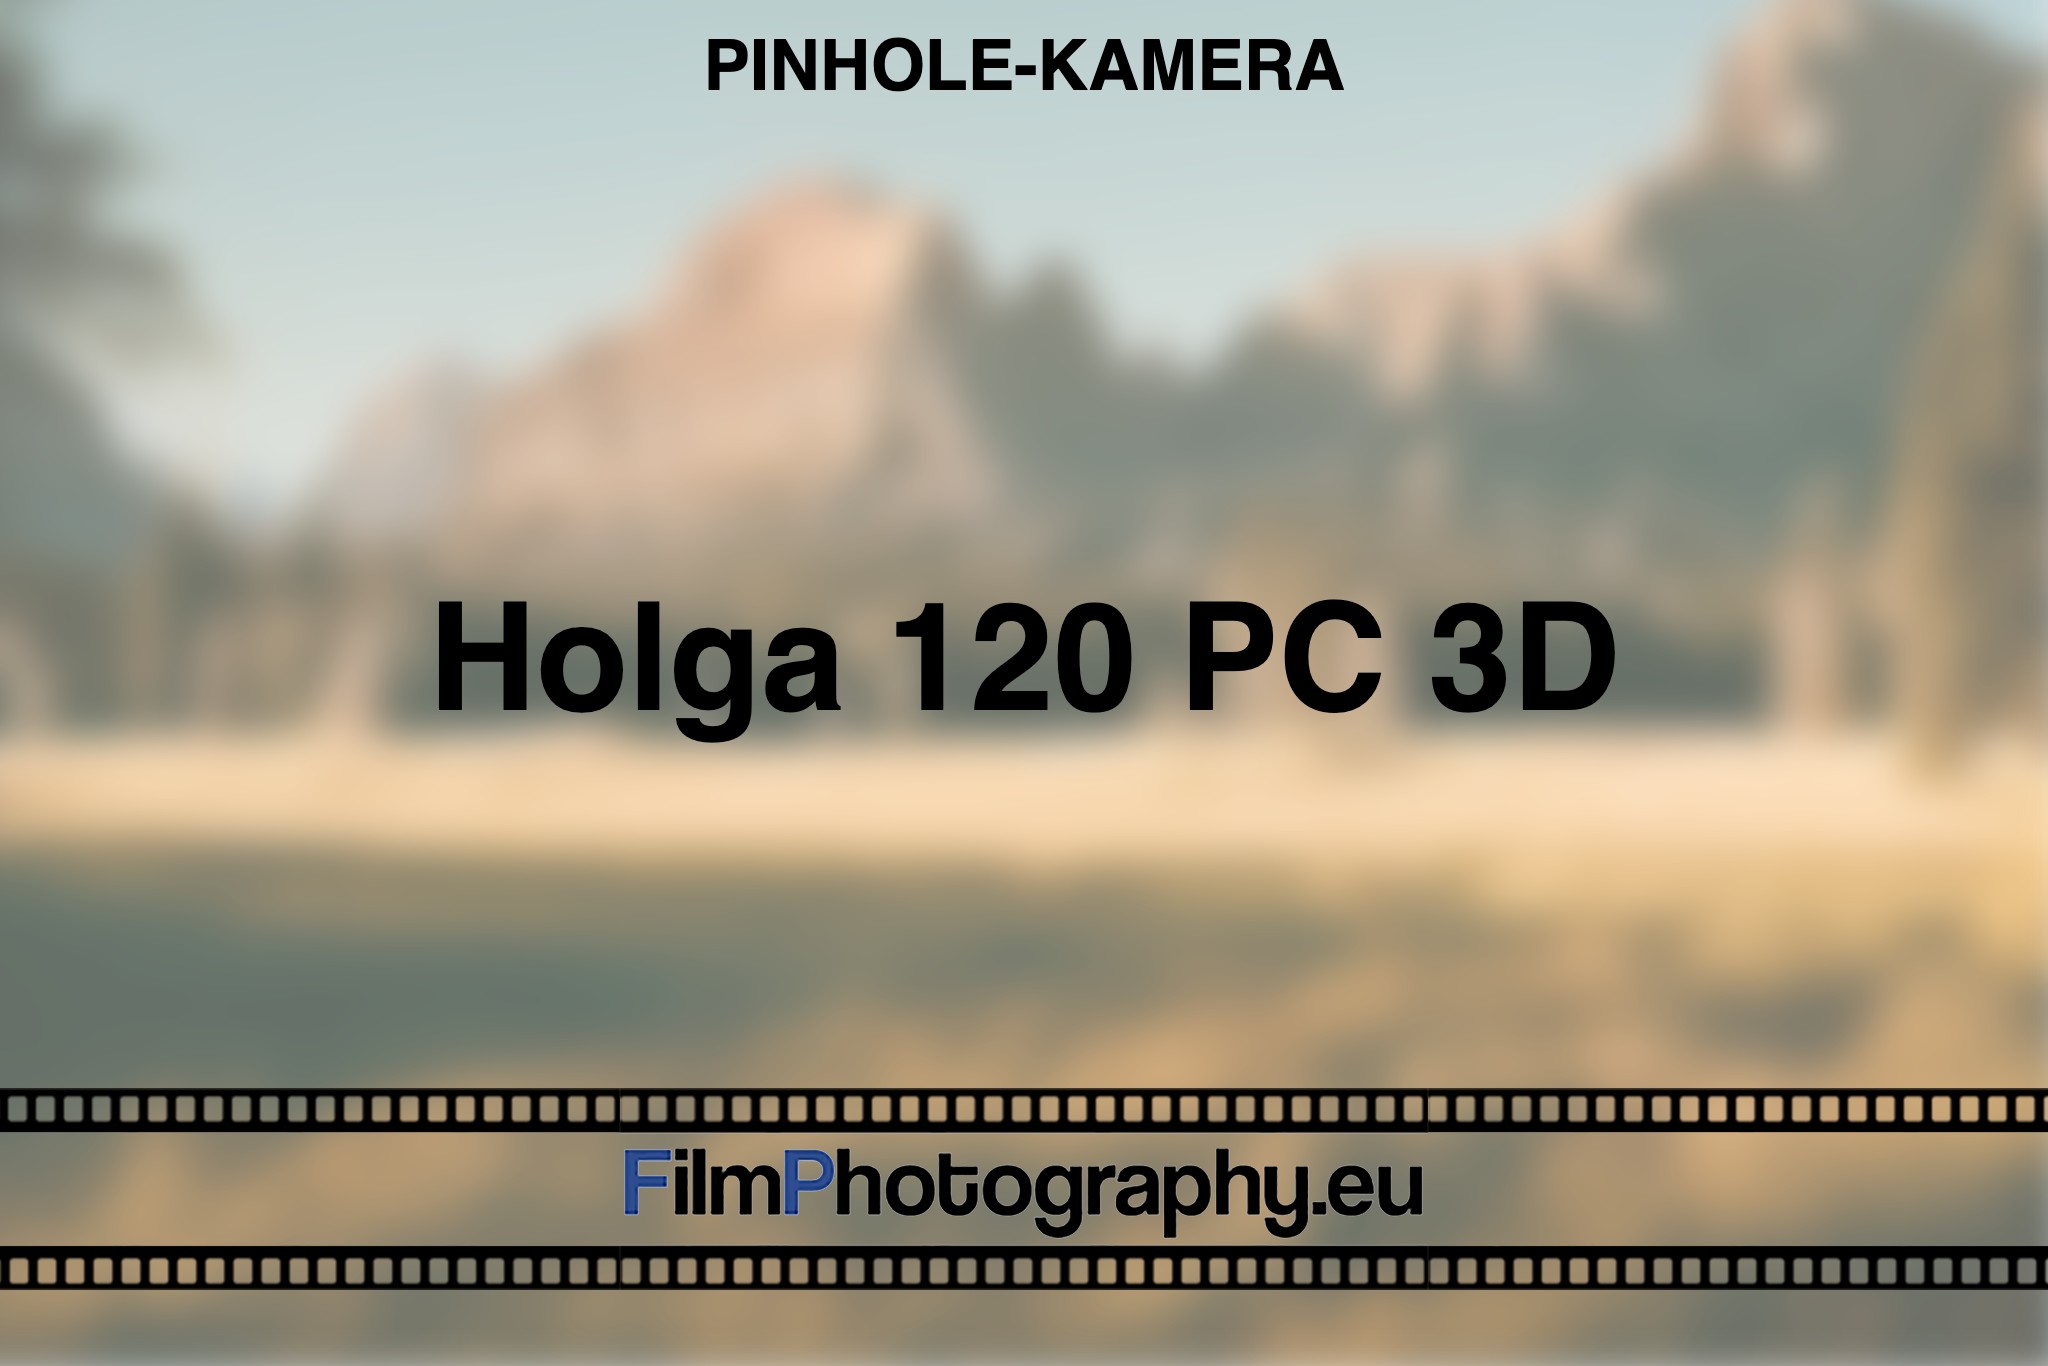 holga-120-pc-3d-pinhole-kamera-bnv